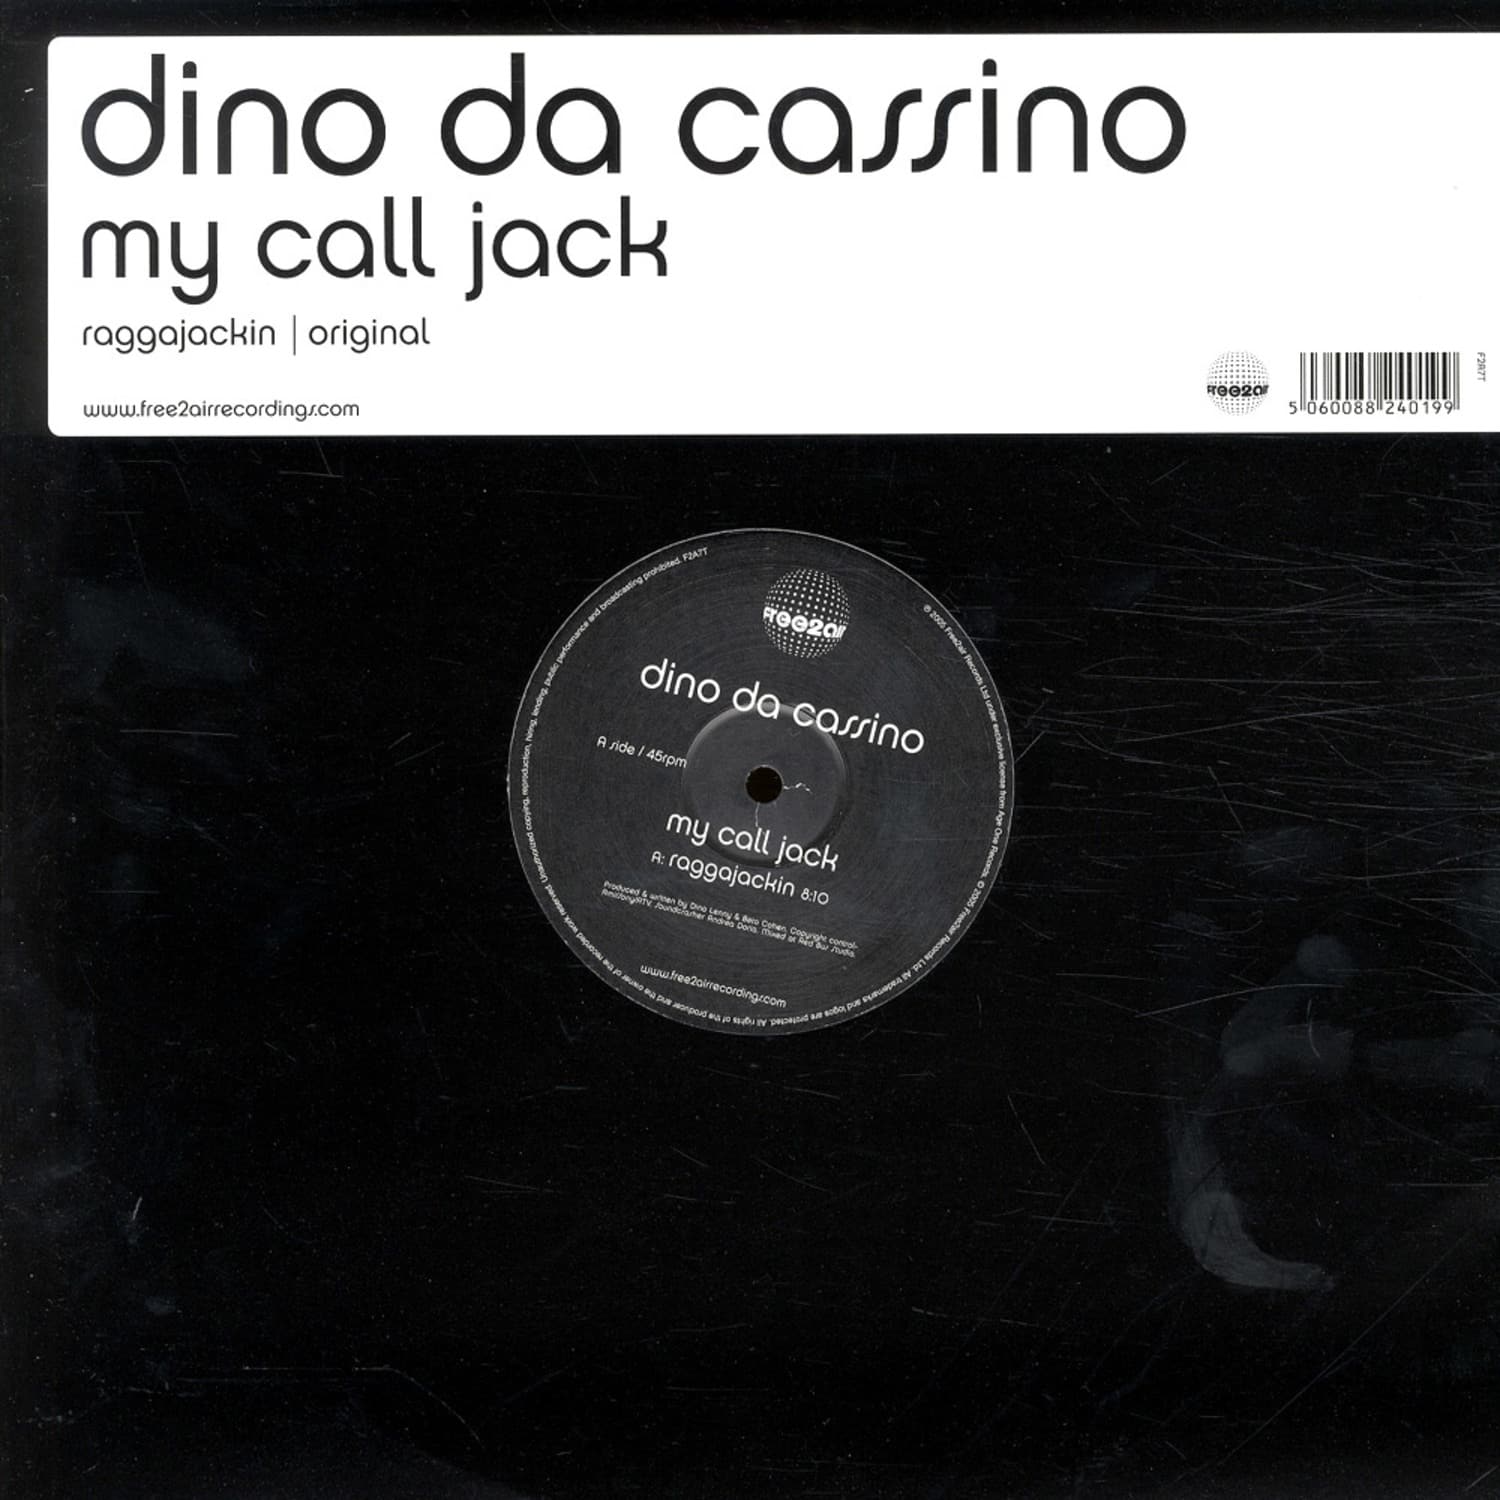 Dino da Cassino - MY CALL JACK